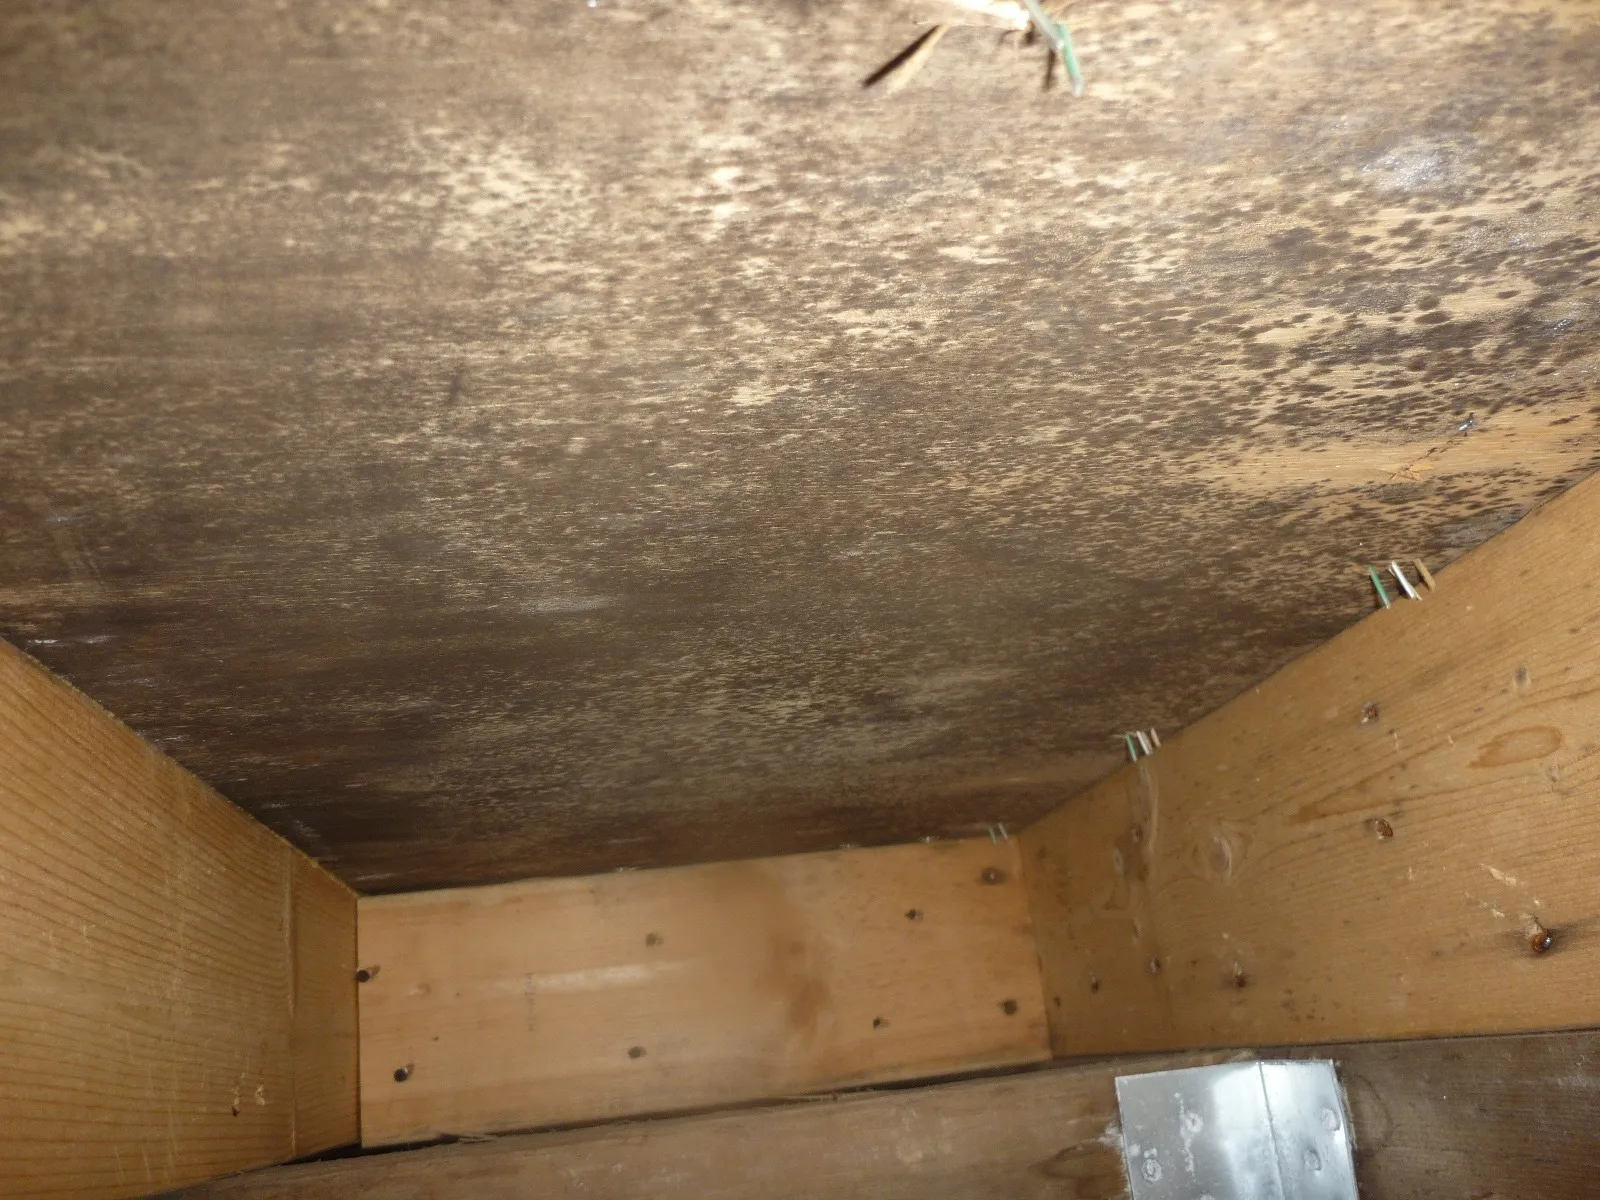 住宅床下木材合板カビの防カビ工事とシロアリ駆除業者の処理の違い